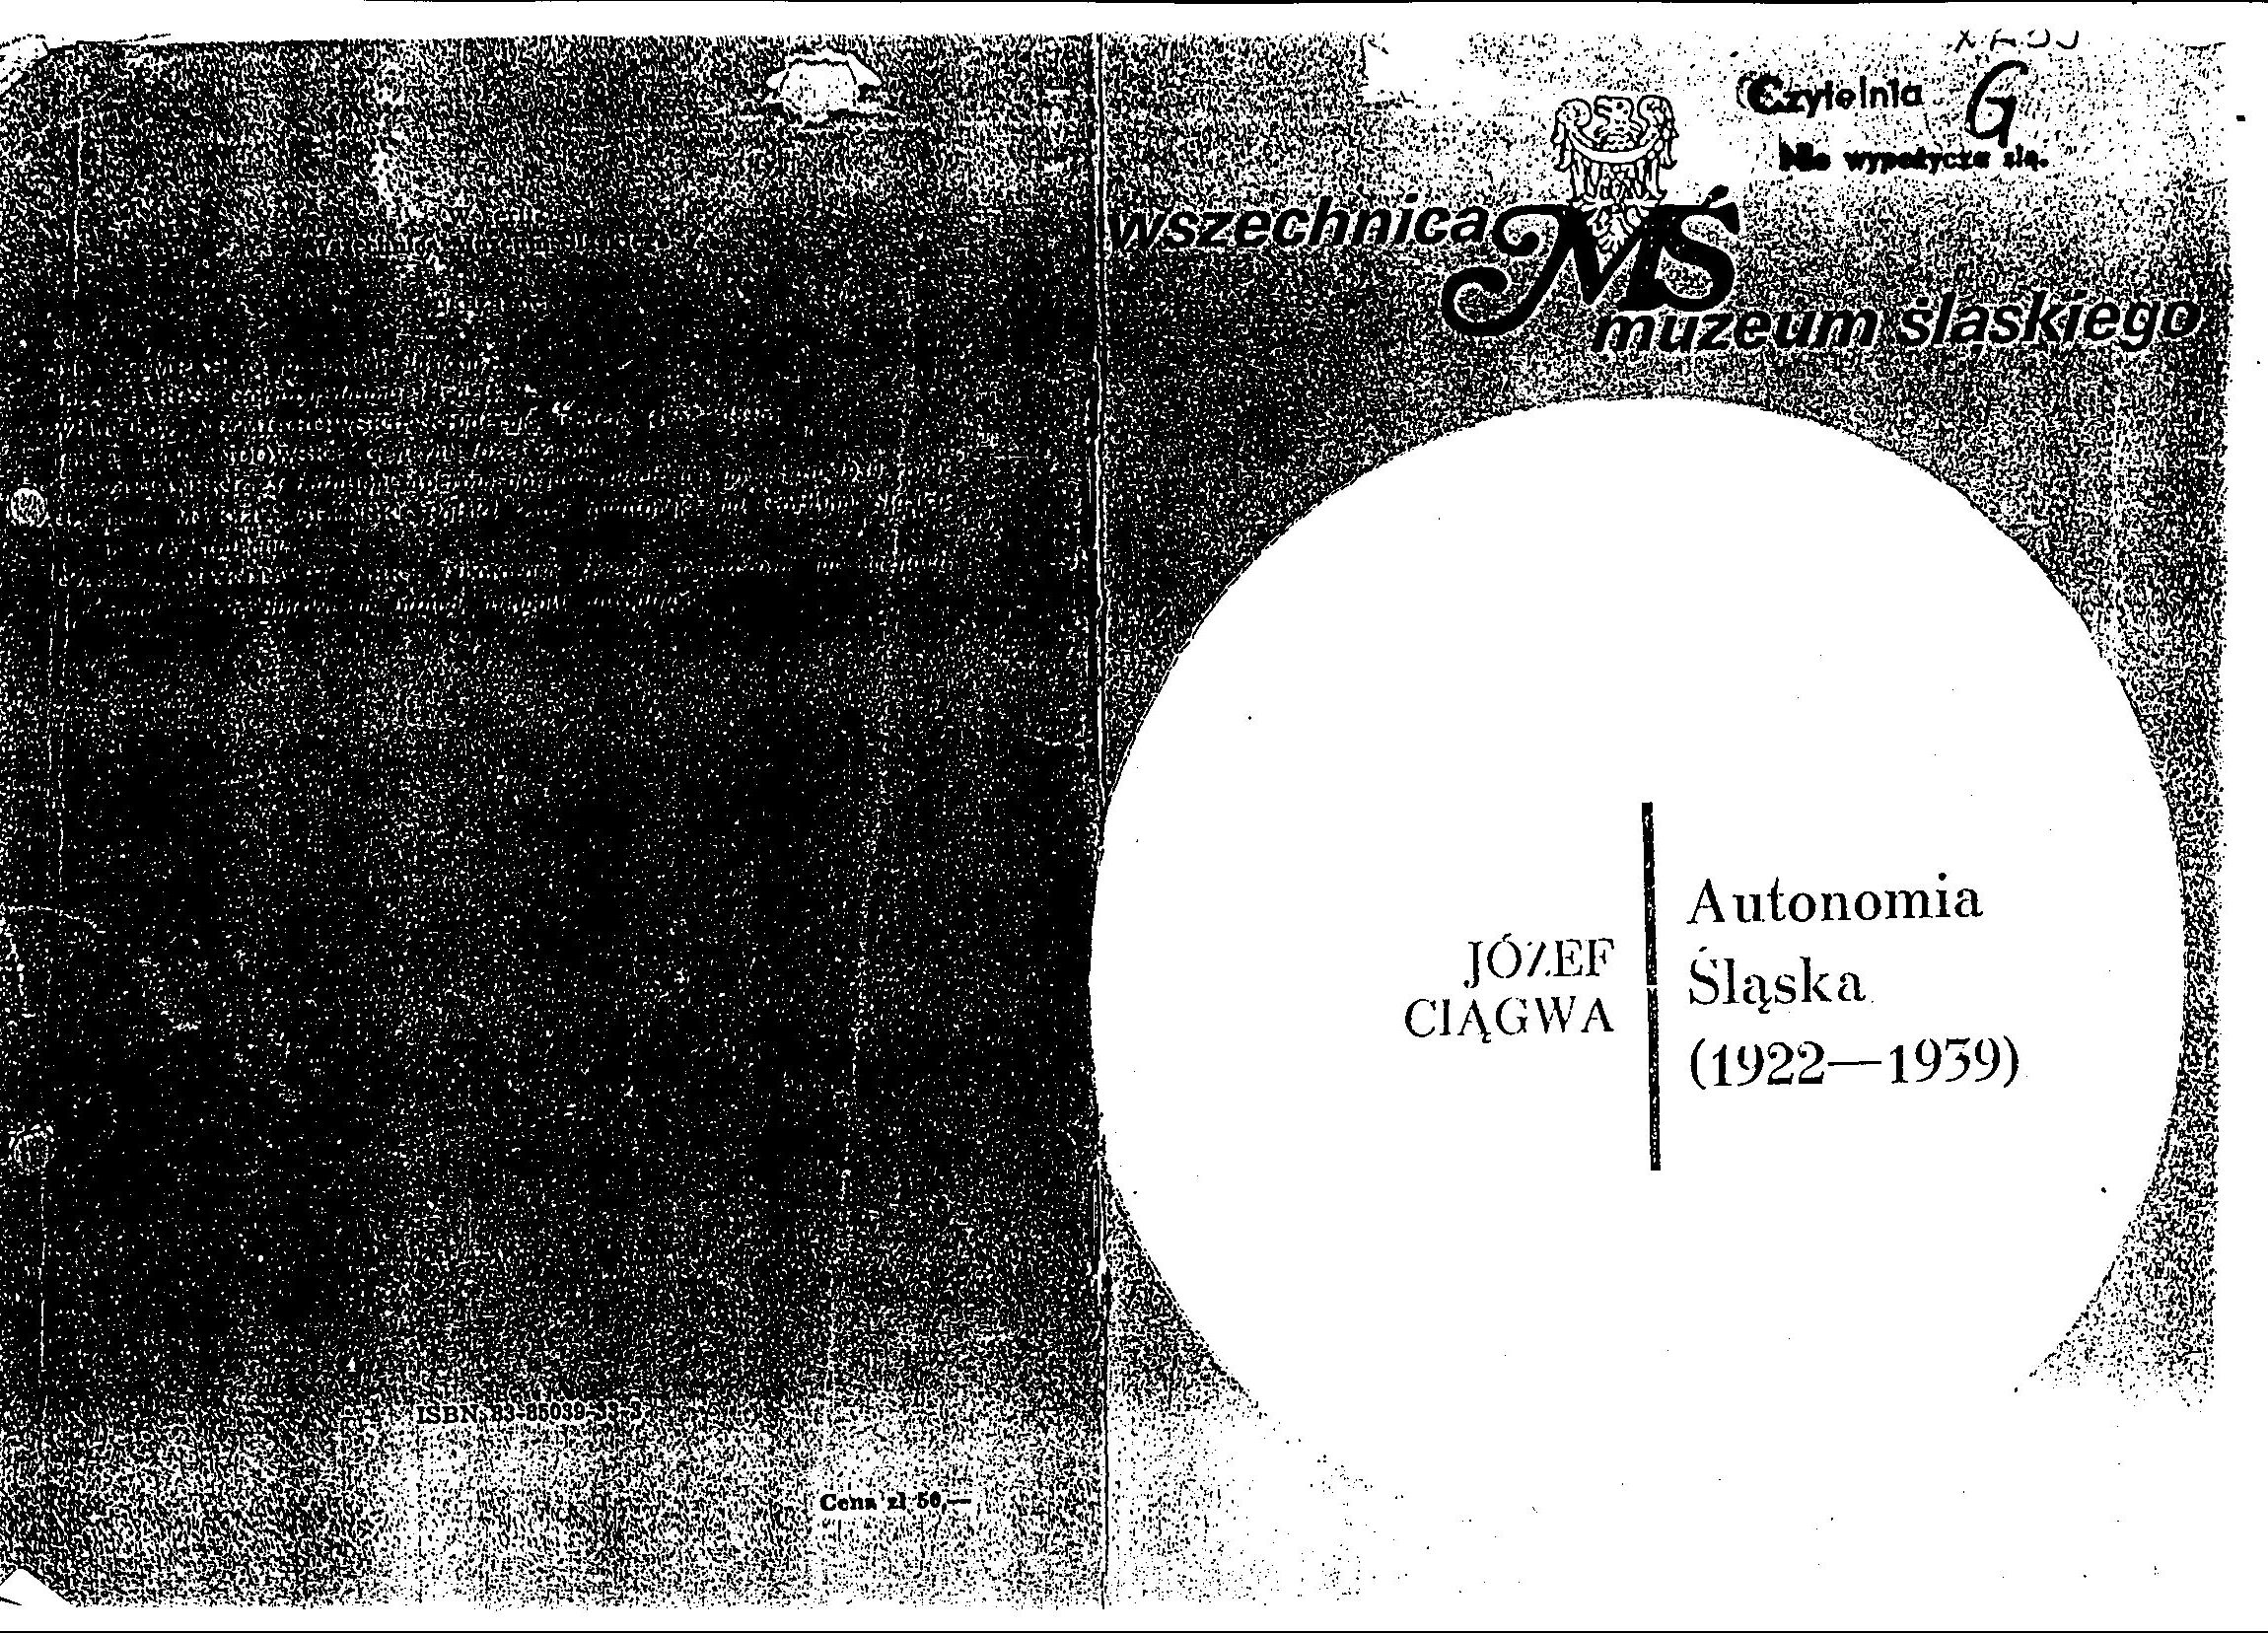 Autonomia śląska - Ciągwa - autonomia_slaska 0.jpg